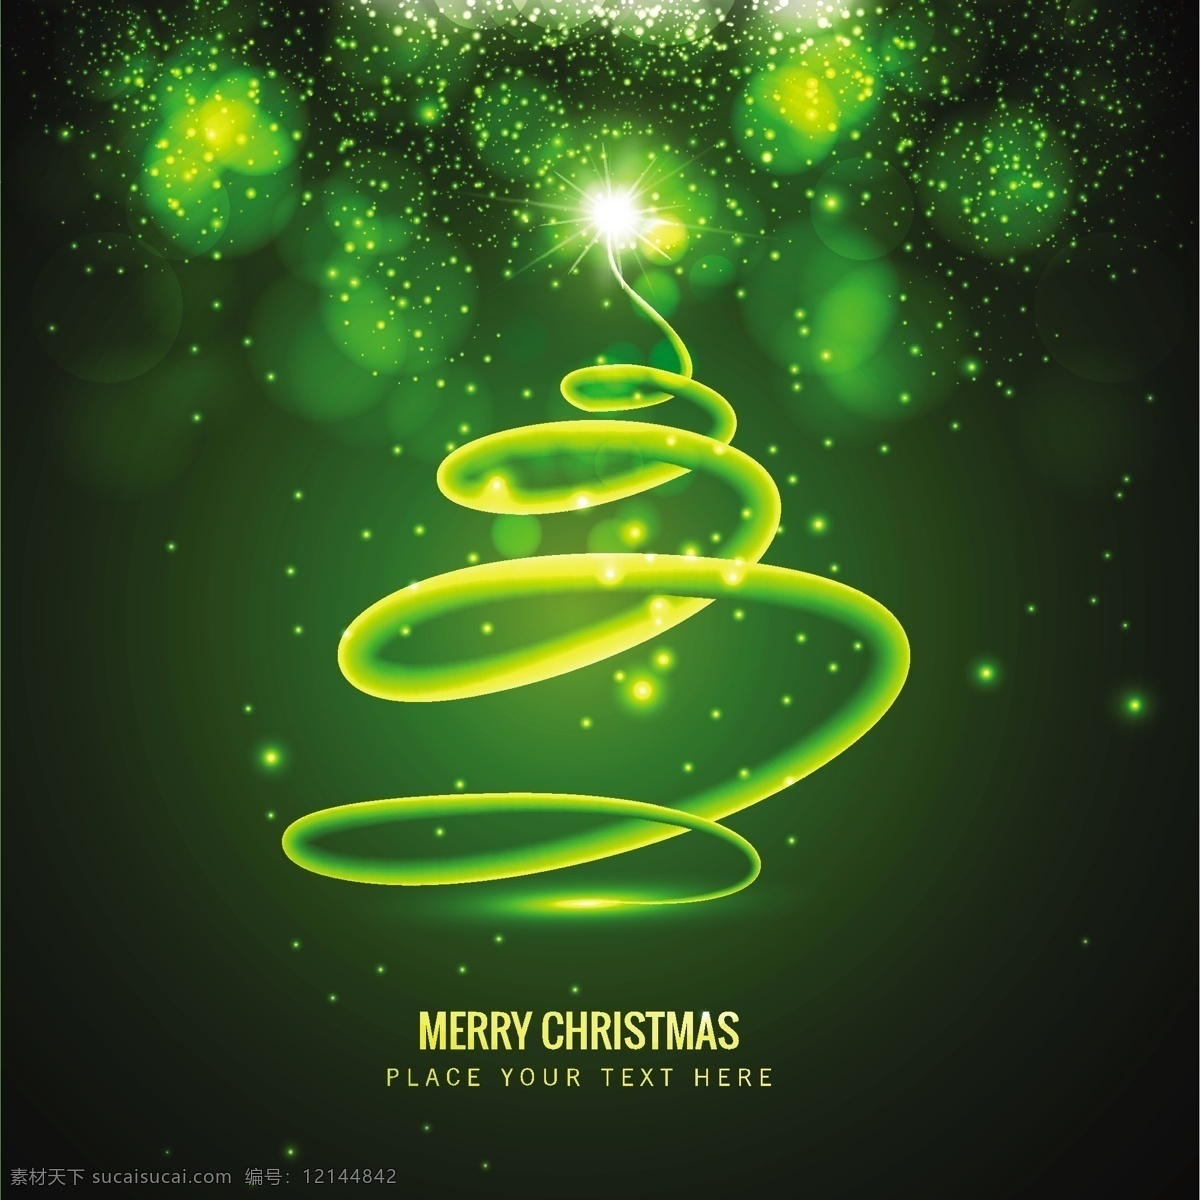 绿色 螺旋 圣诞树 背景 抽象的 绿色的圣诞树 绿色的背景 背景壁纸 圣诞节 圣诞卡 圣诞 问候 明亮 季节 节日 闪亮 发光 黑色